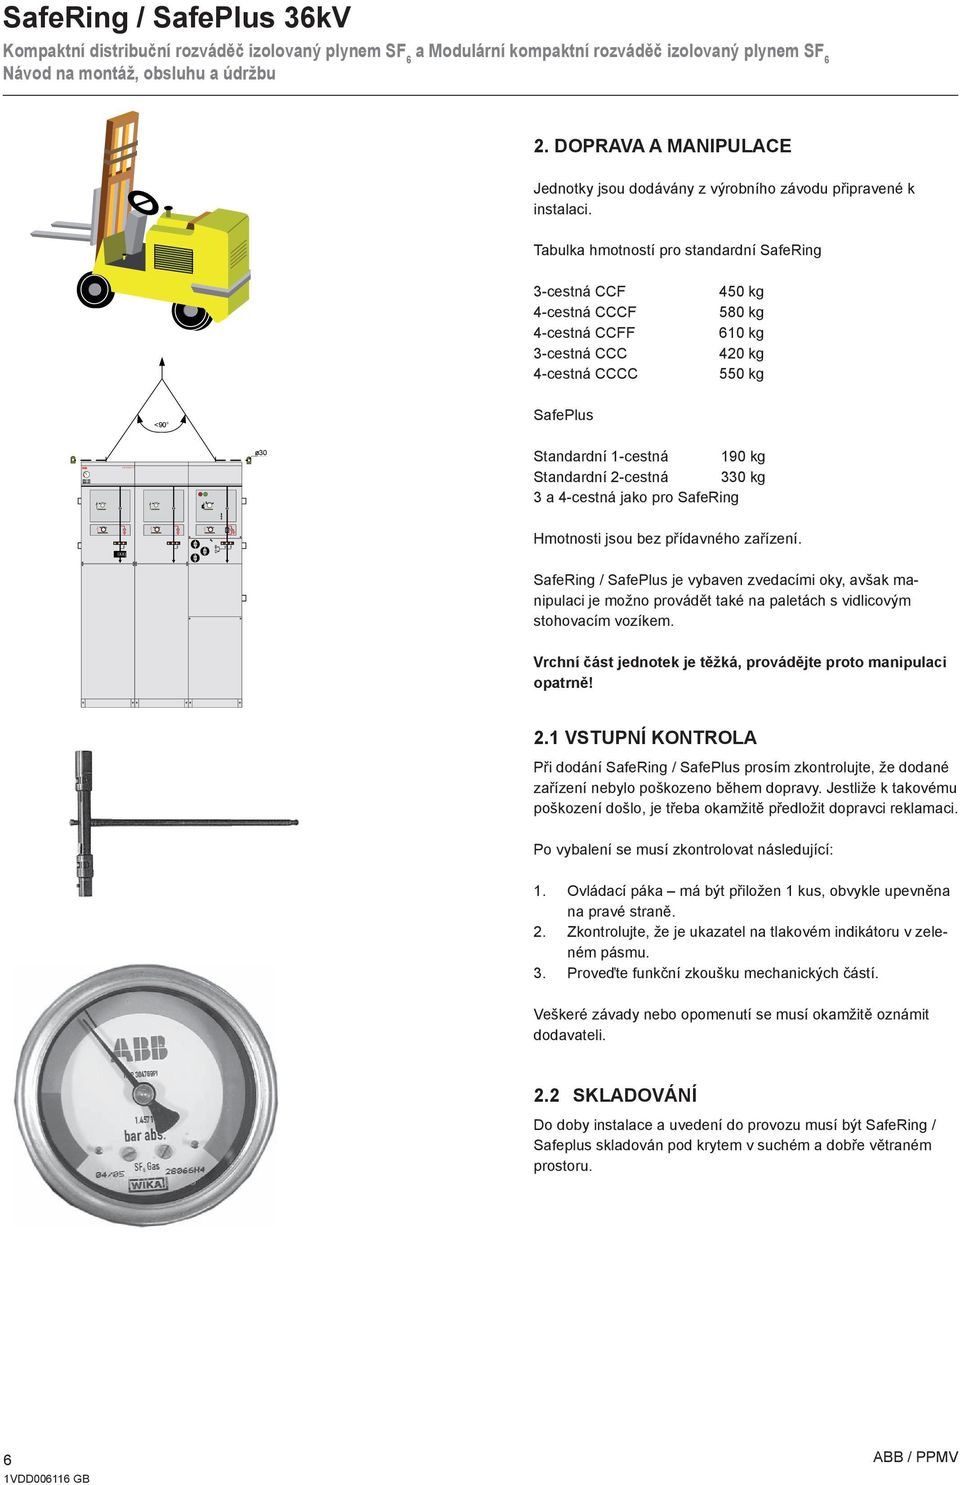 Standardní 2-cestná 330 kg 3 a 4-cestná jako pro SafeRing Hmotnosti jsou bez přídavného zařízení.